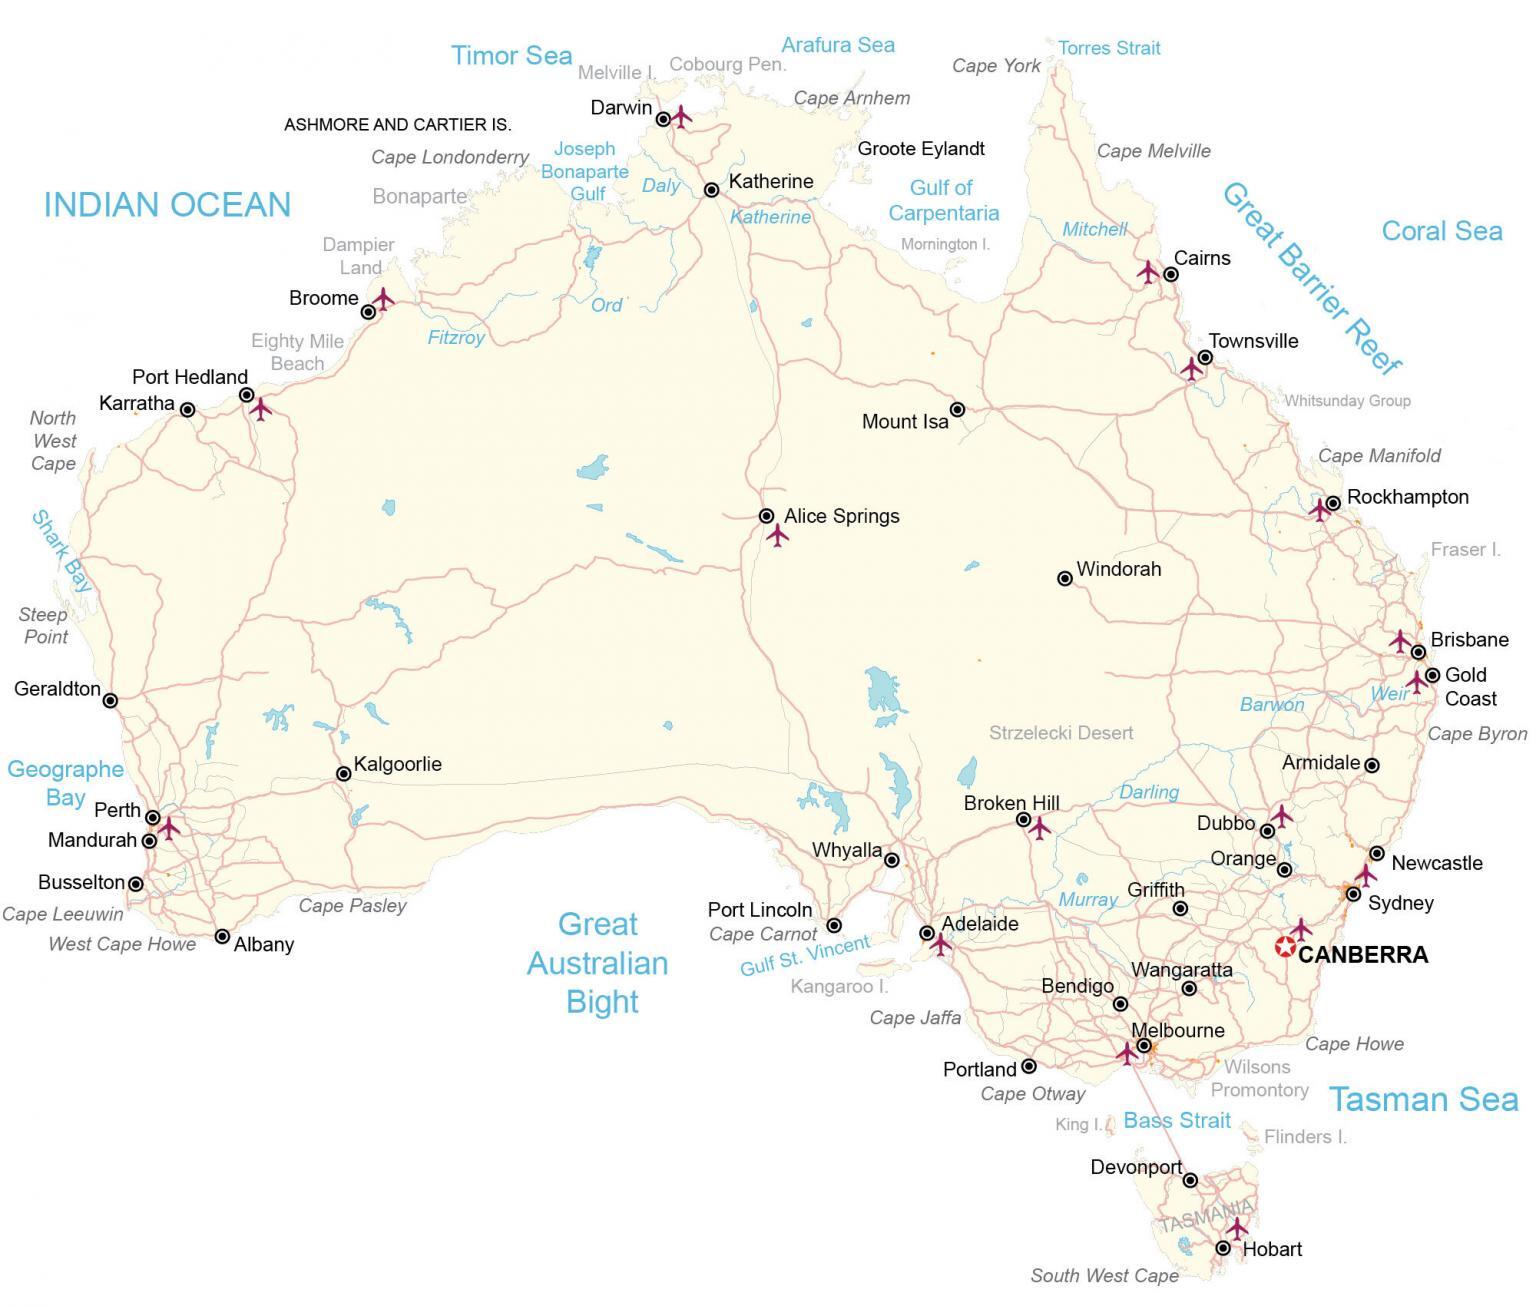 Mappa geografica dell'Australia